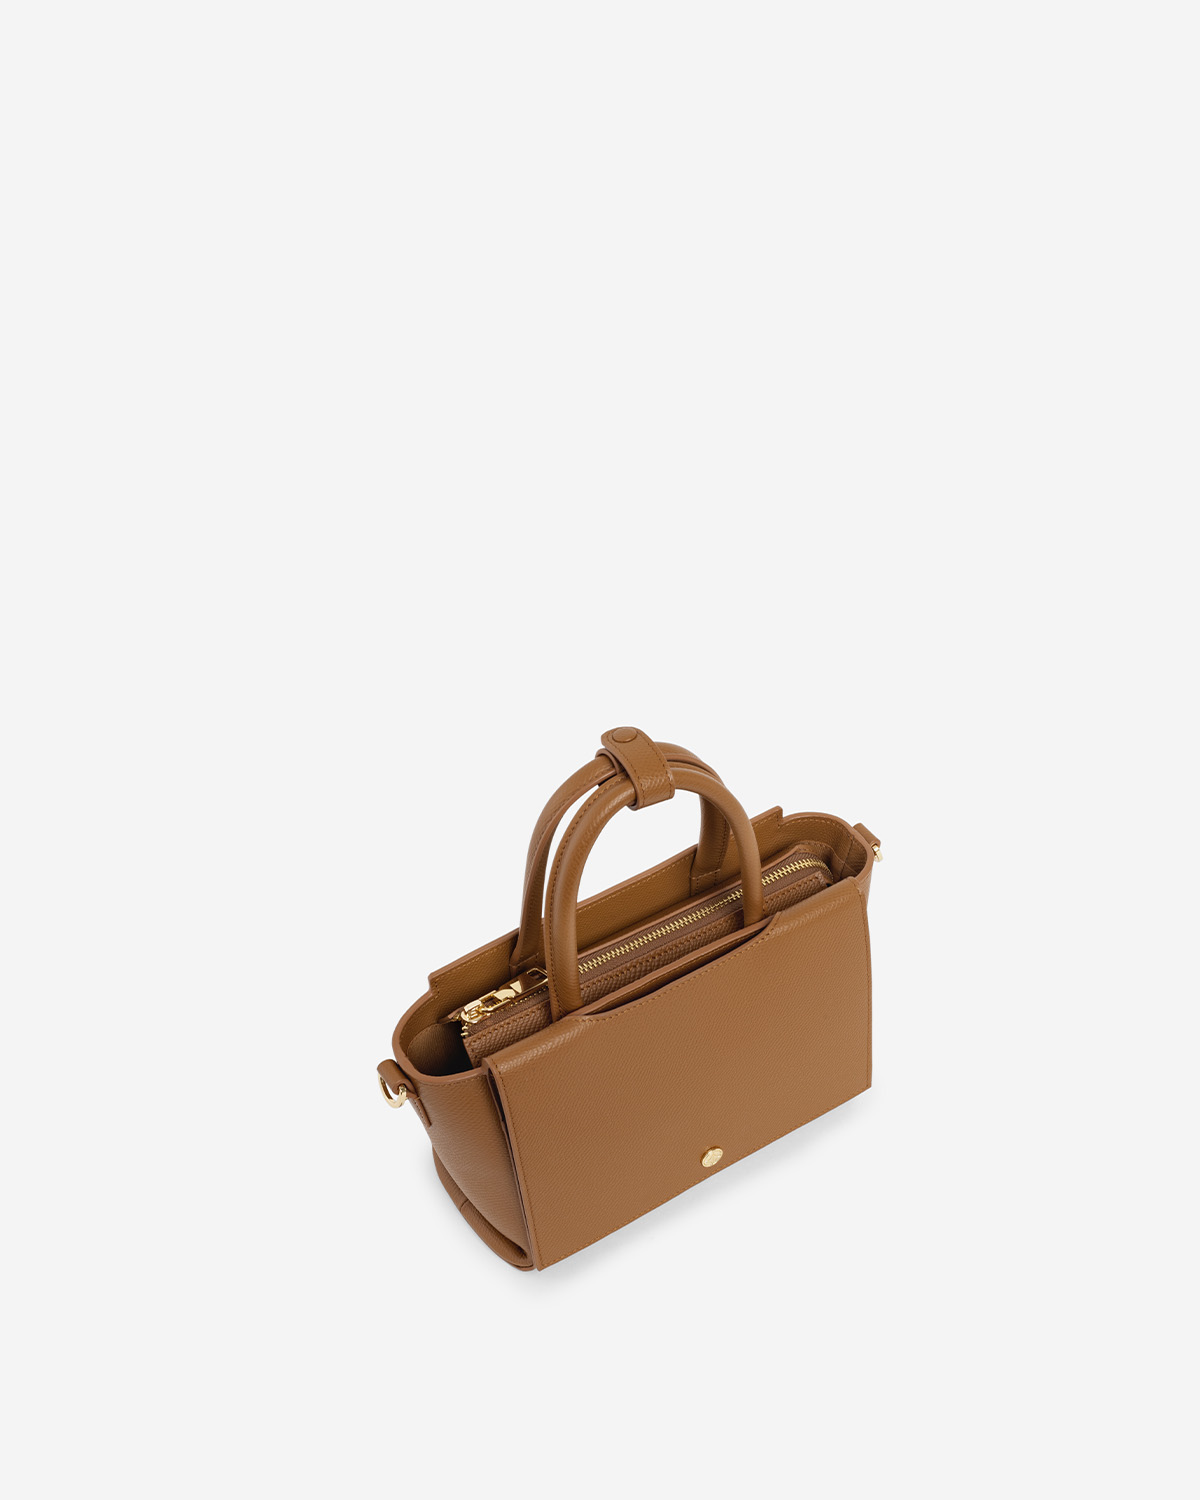 กระเป๋าถือหนังแท้ VERA Heidi Leather Handbag, ไซส์ 22 สี Camel